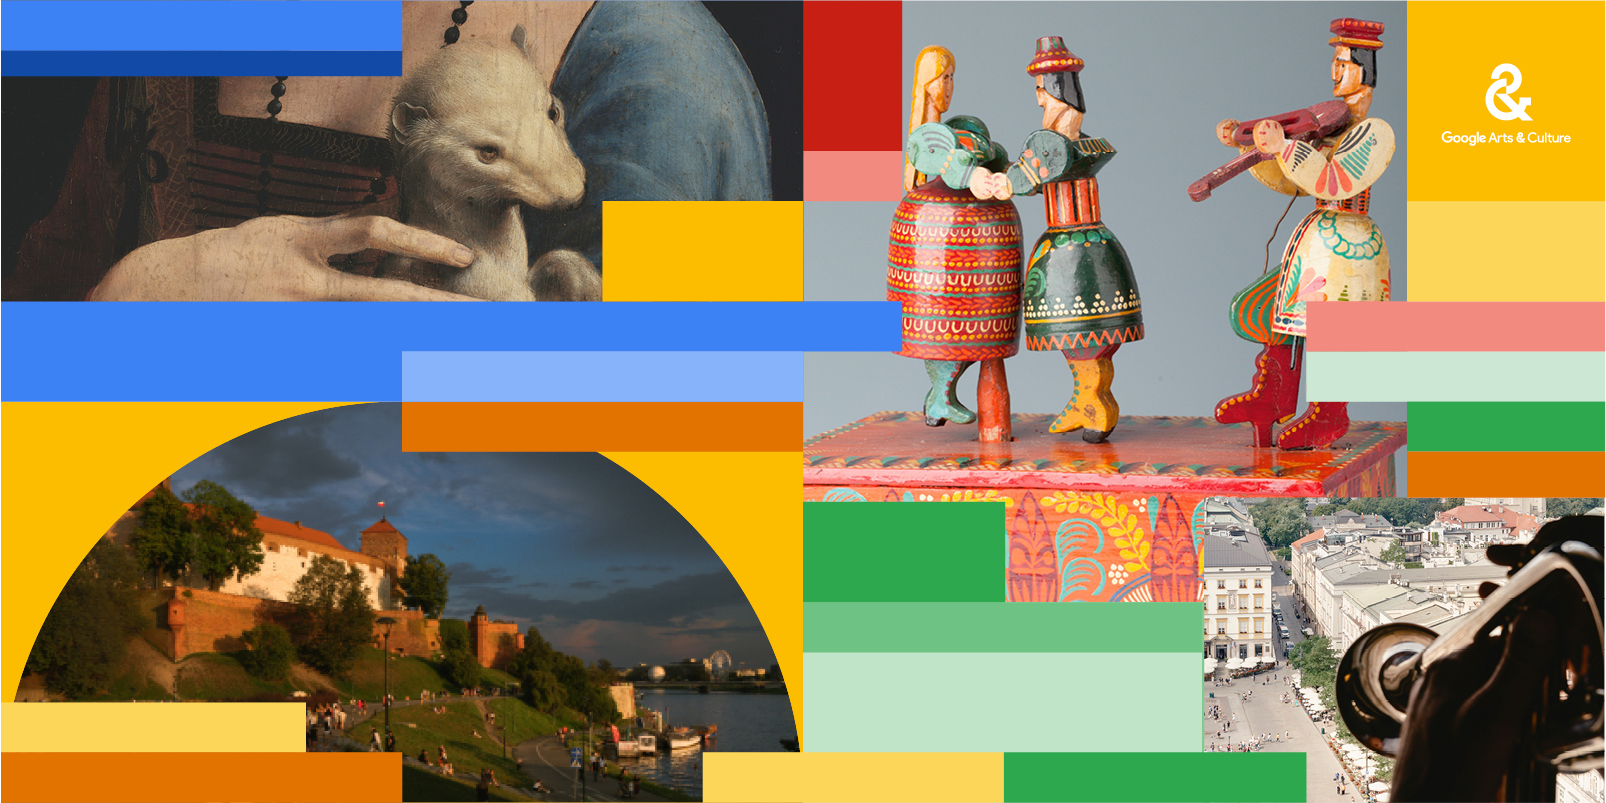 Kraków-wow! (źródło: Google Arts & Culture)